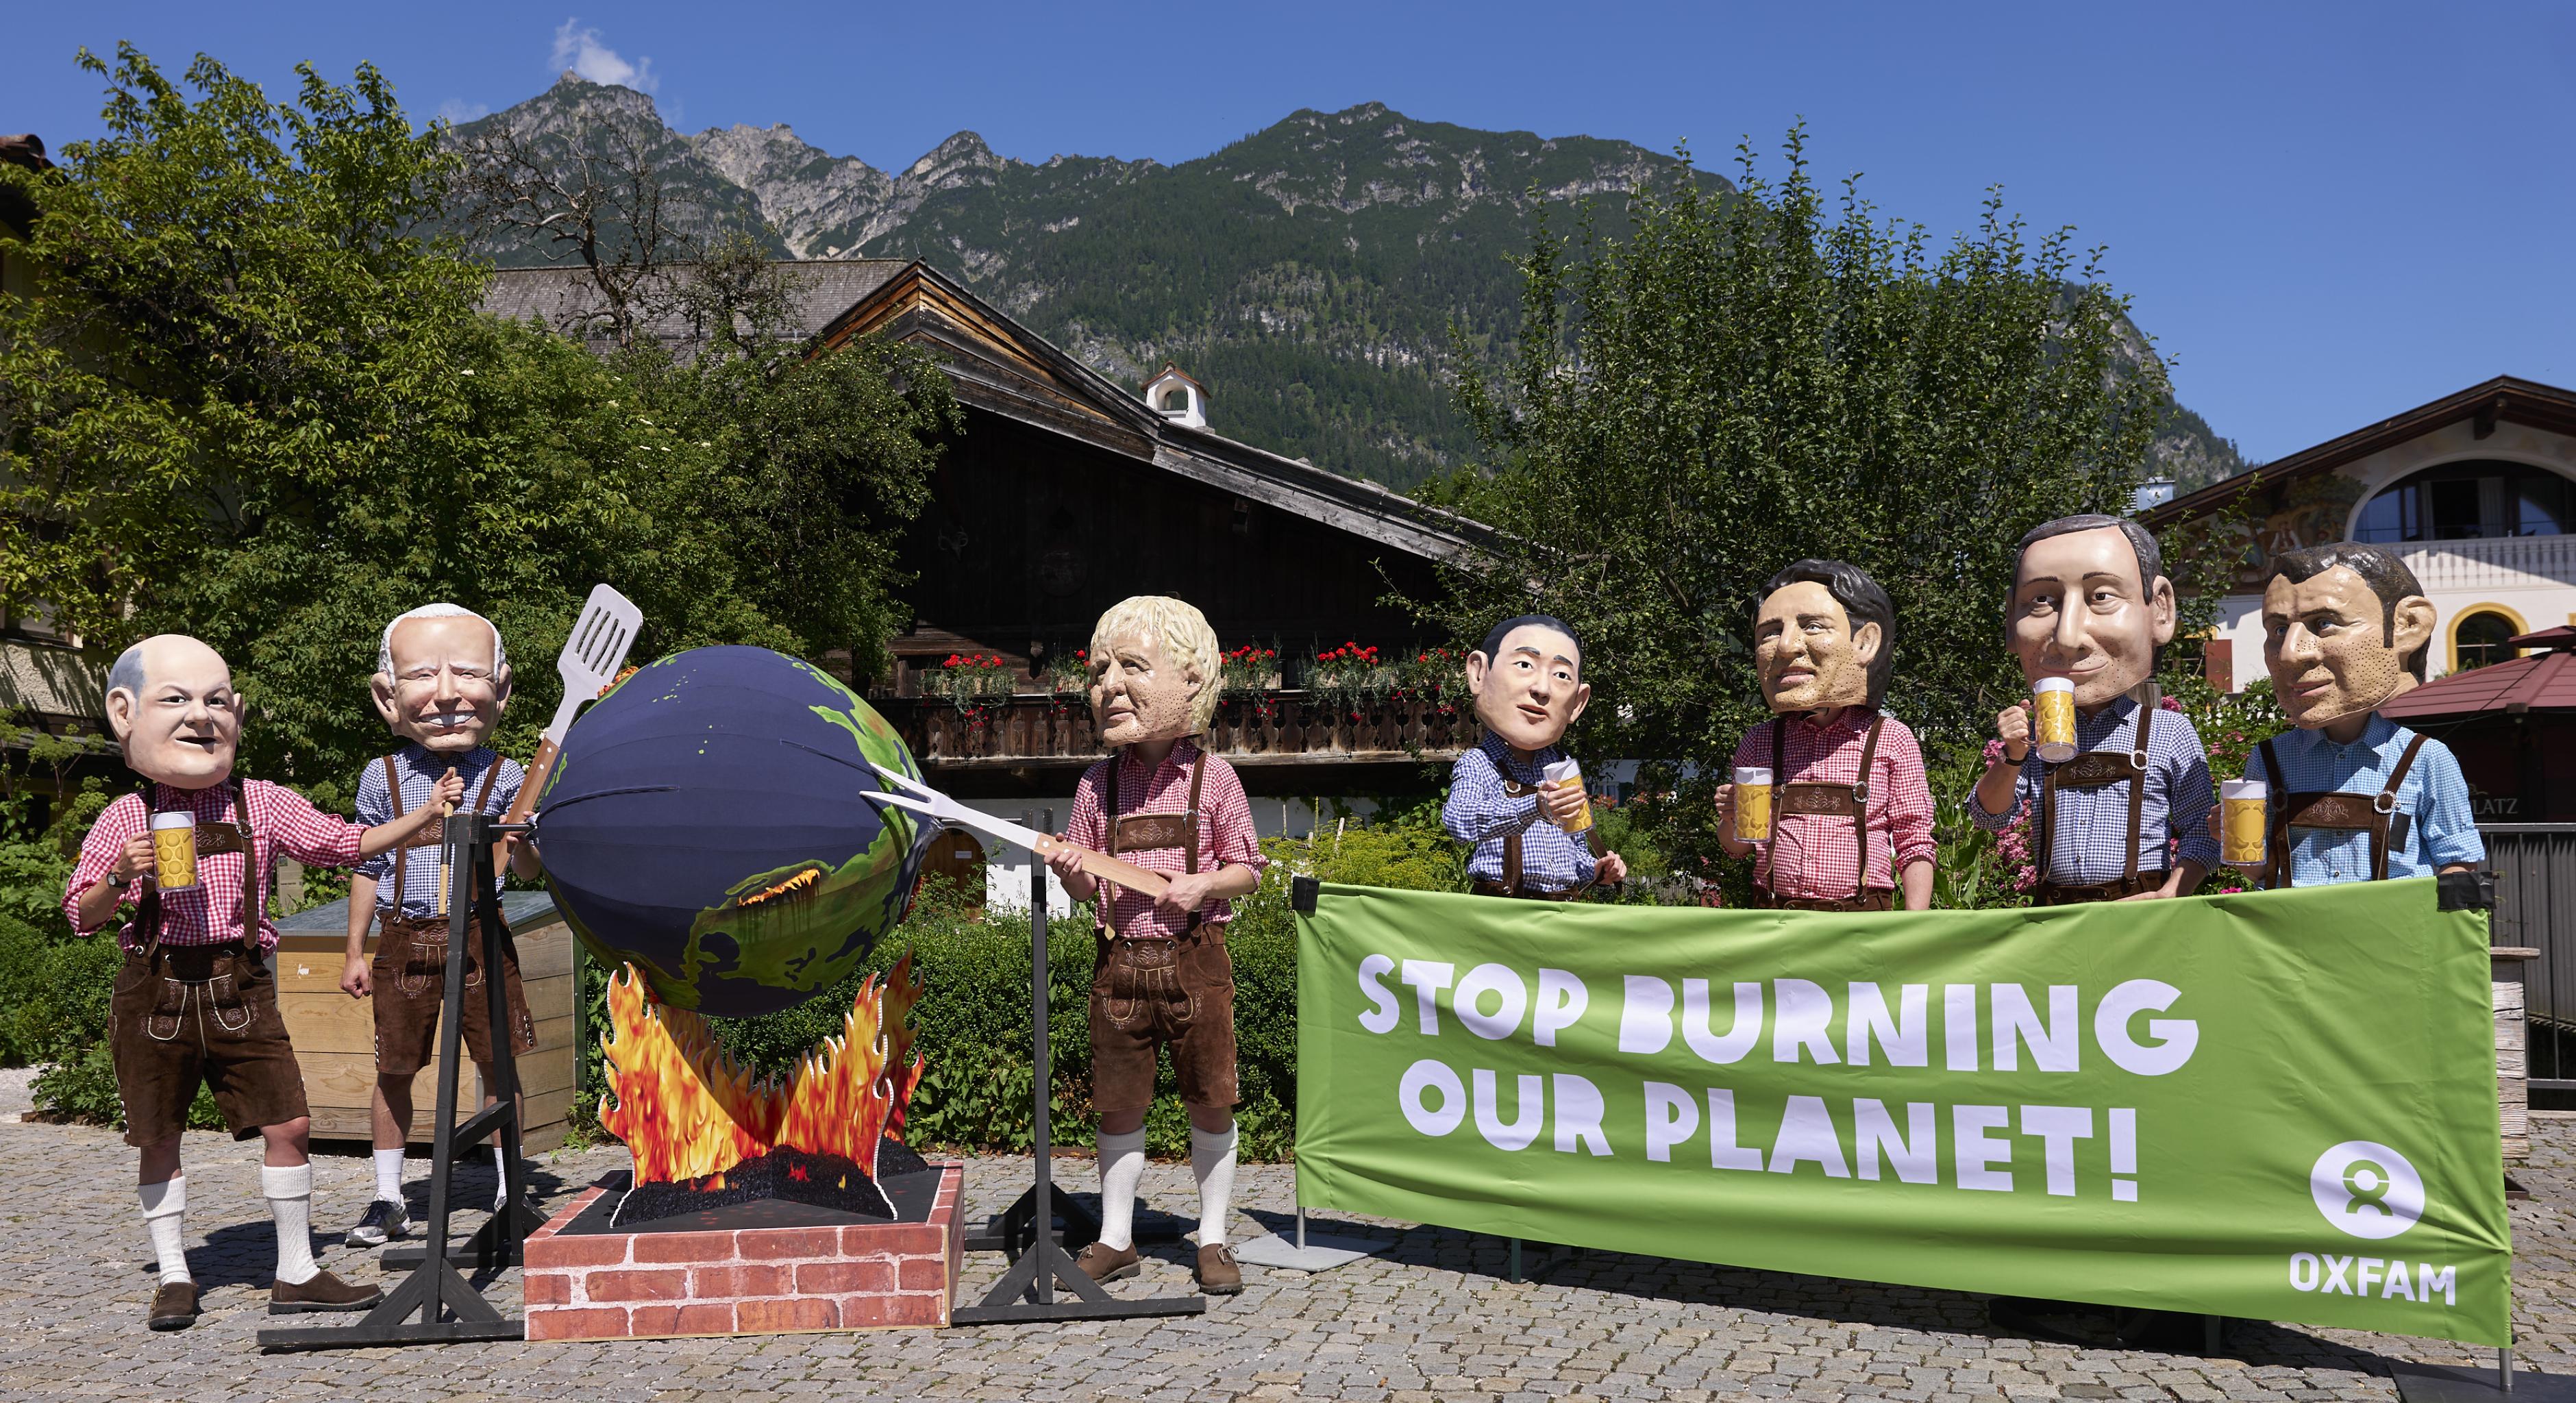 In Lederhosen und vor alpiner Kulisse grillen die Bigheads (Karikaturen der Staats- und Regierungschefs der G7) die Erde. Oxfam fordert: „Stop burning our planet!“